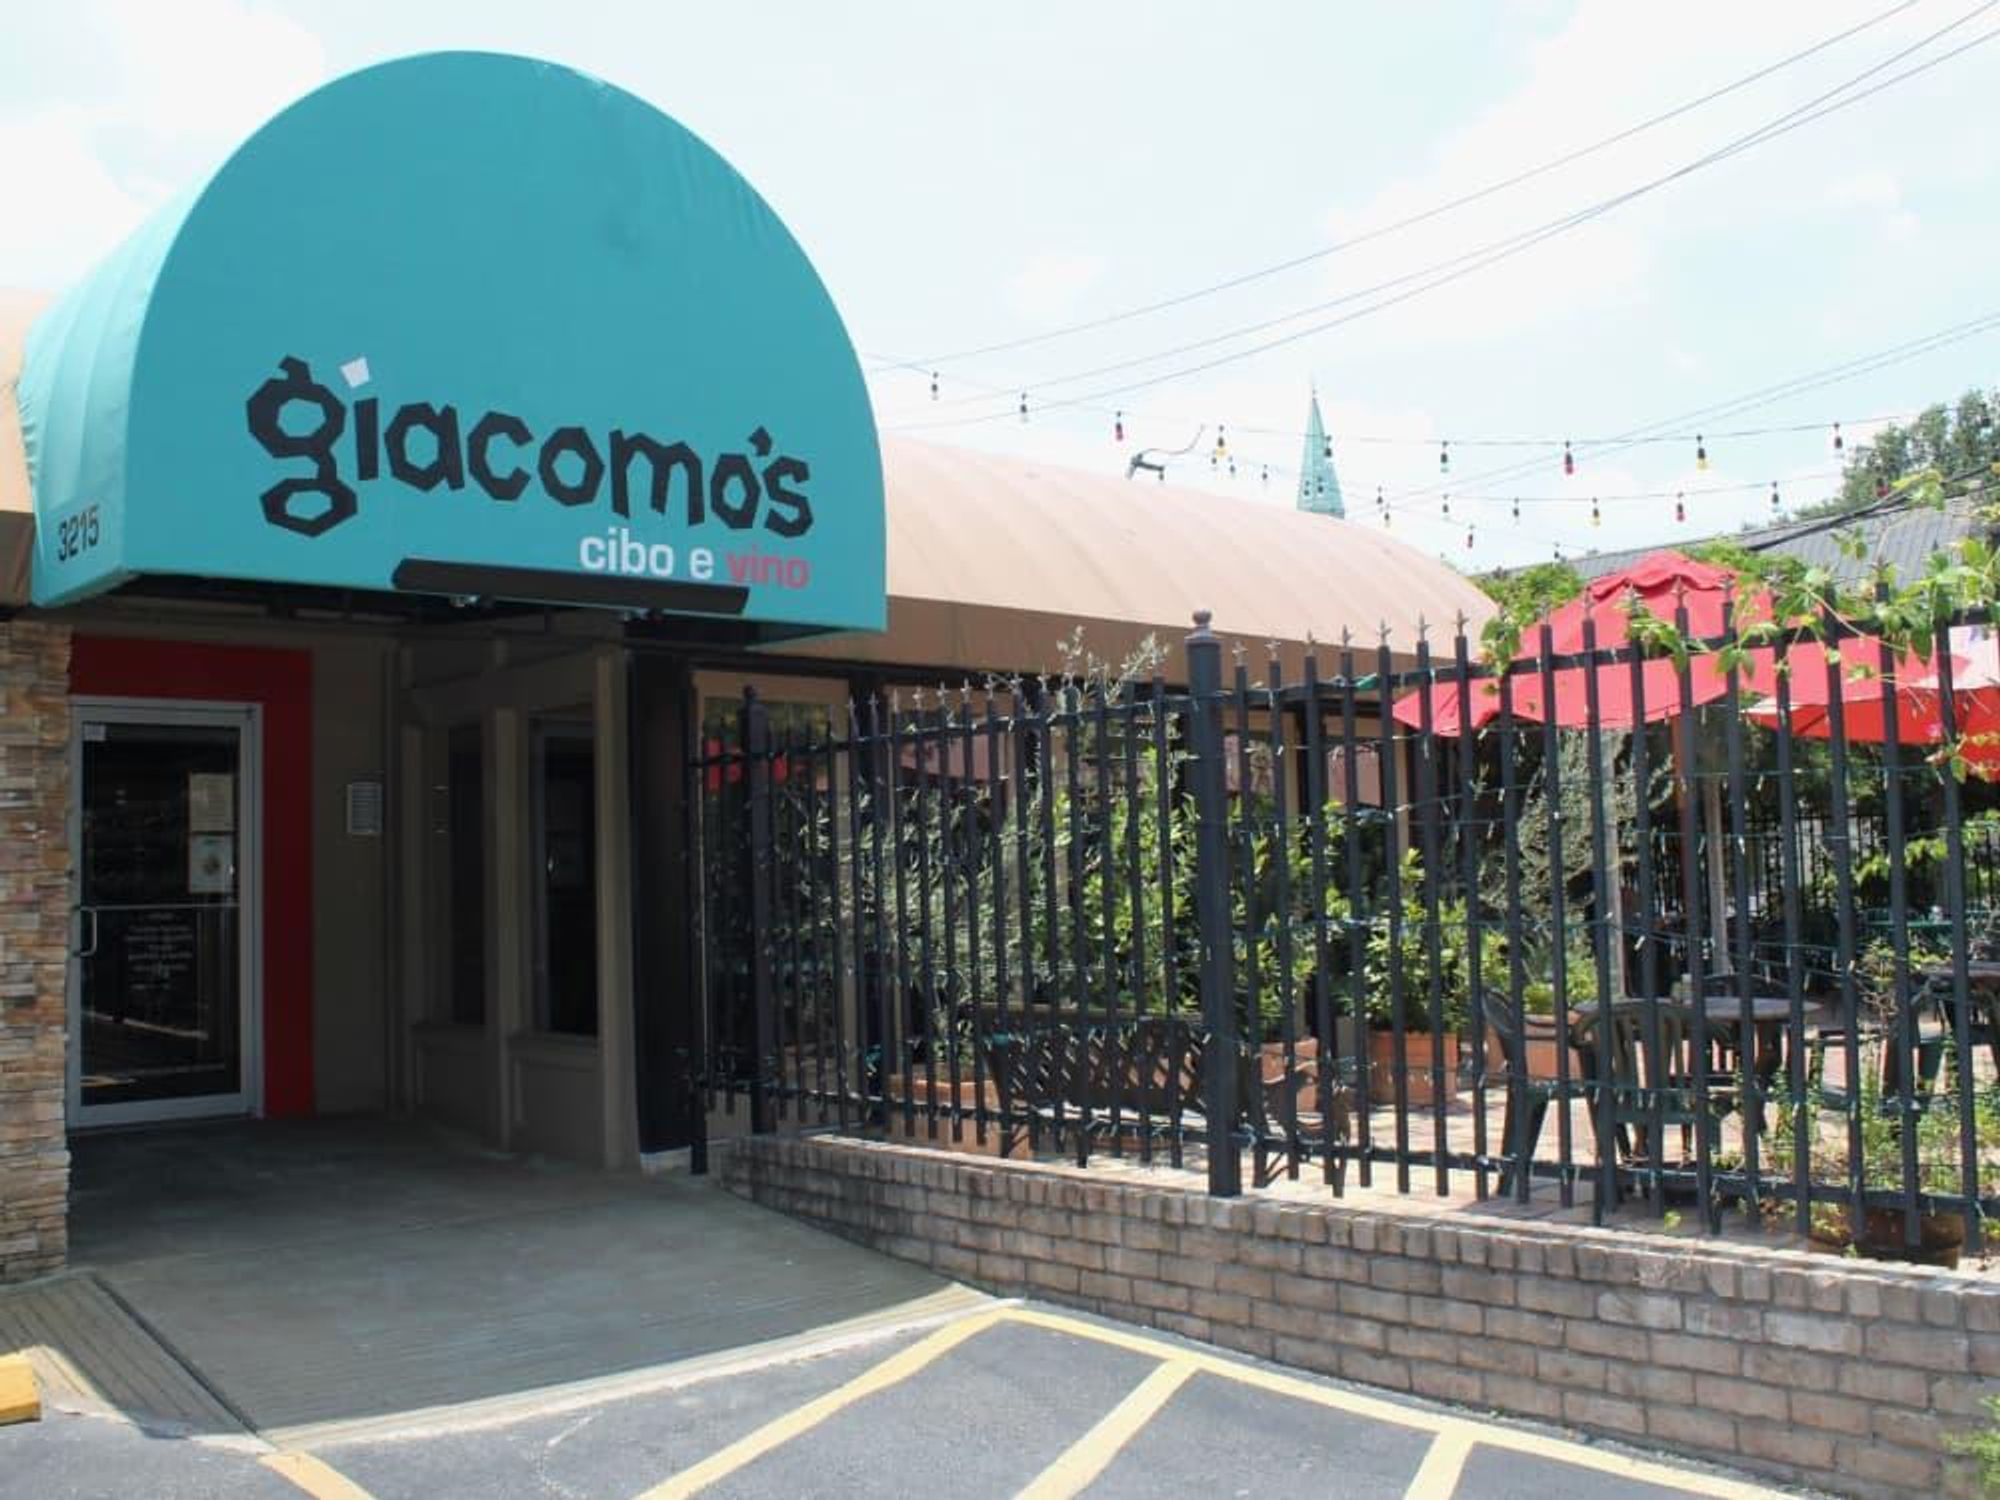 Giacomo's Restaurant, Exterior, June 2012